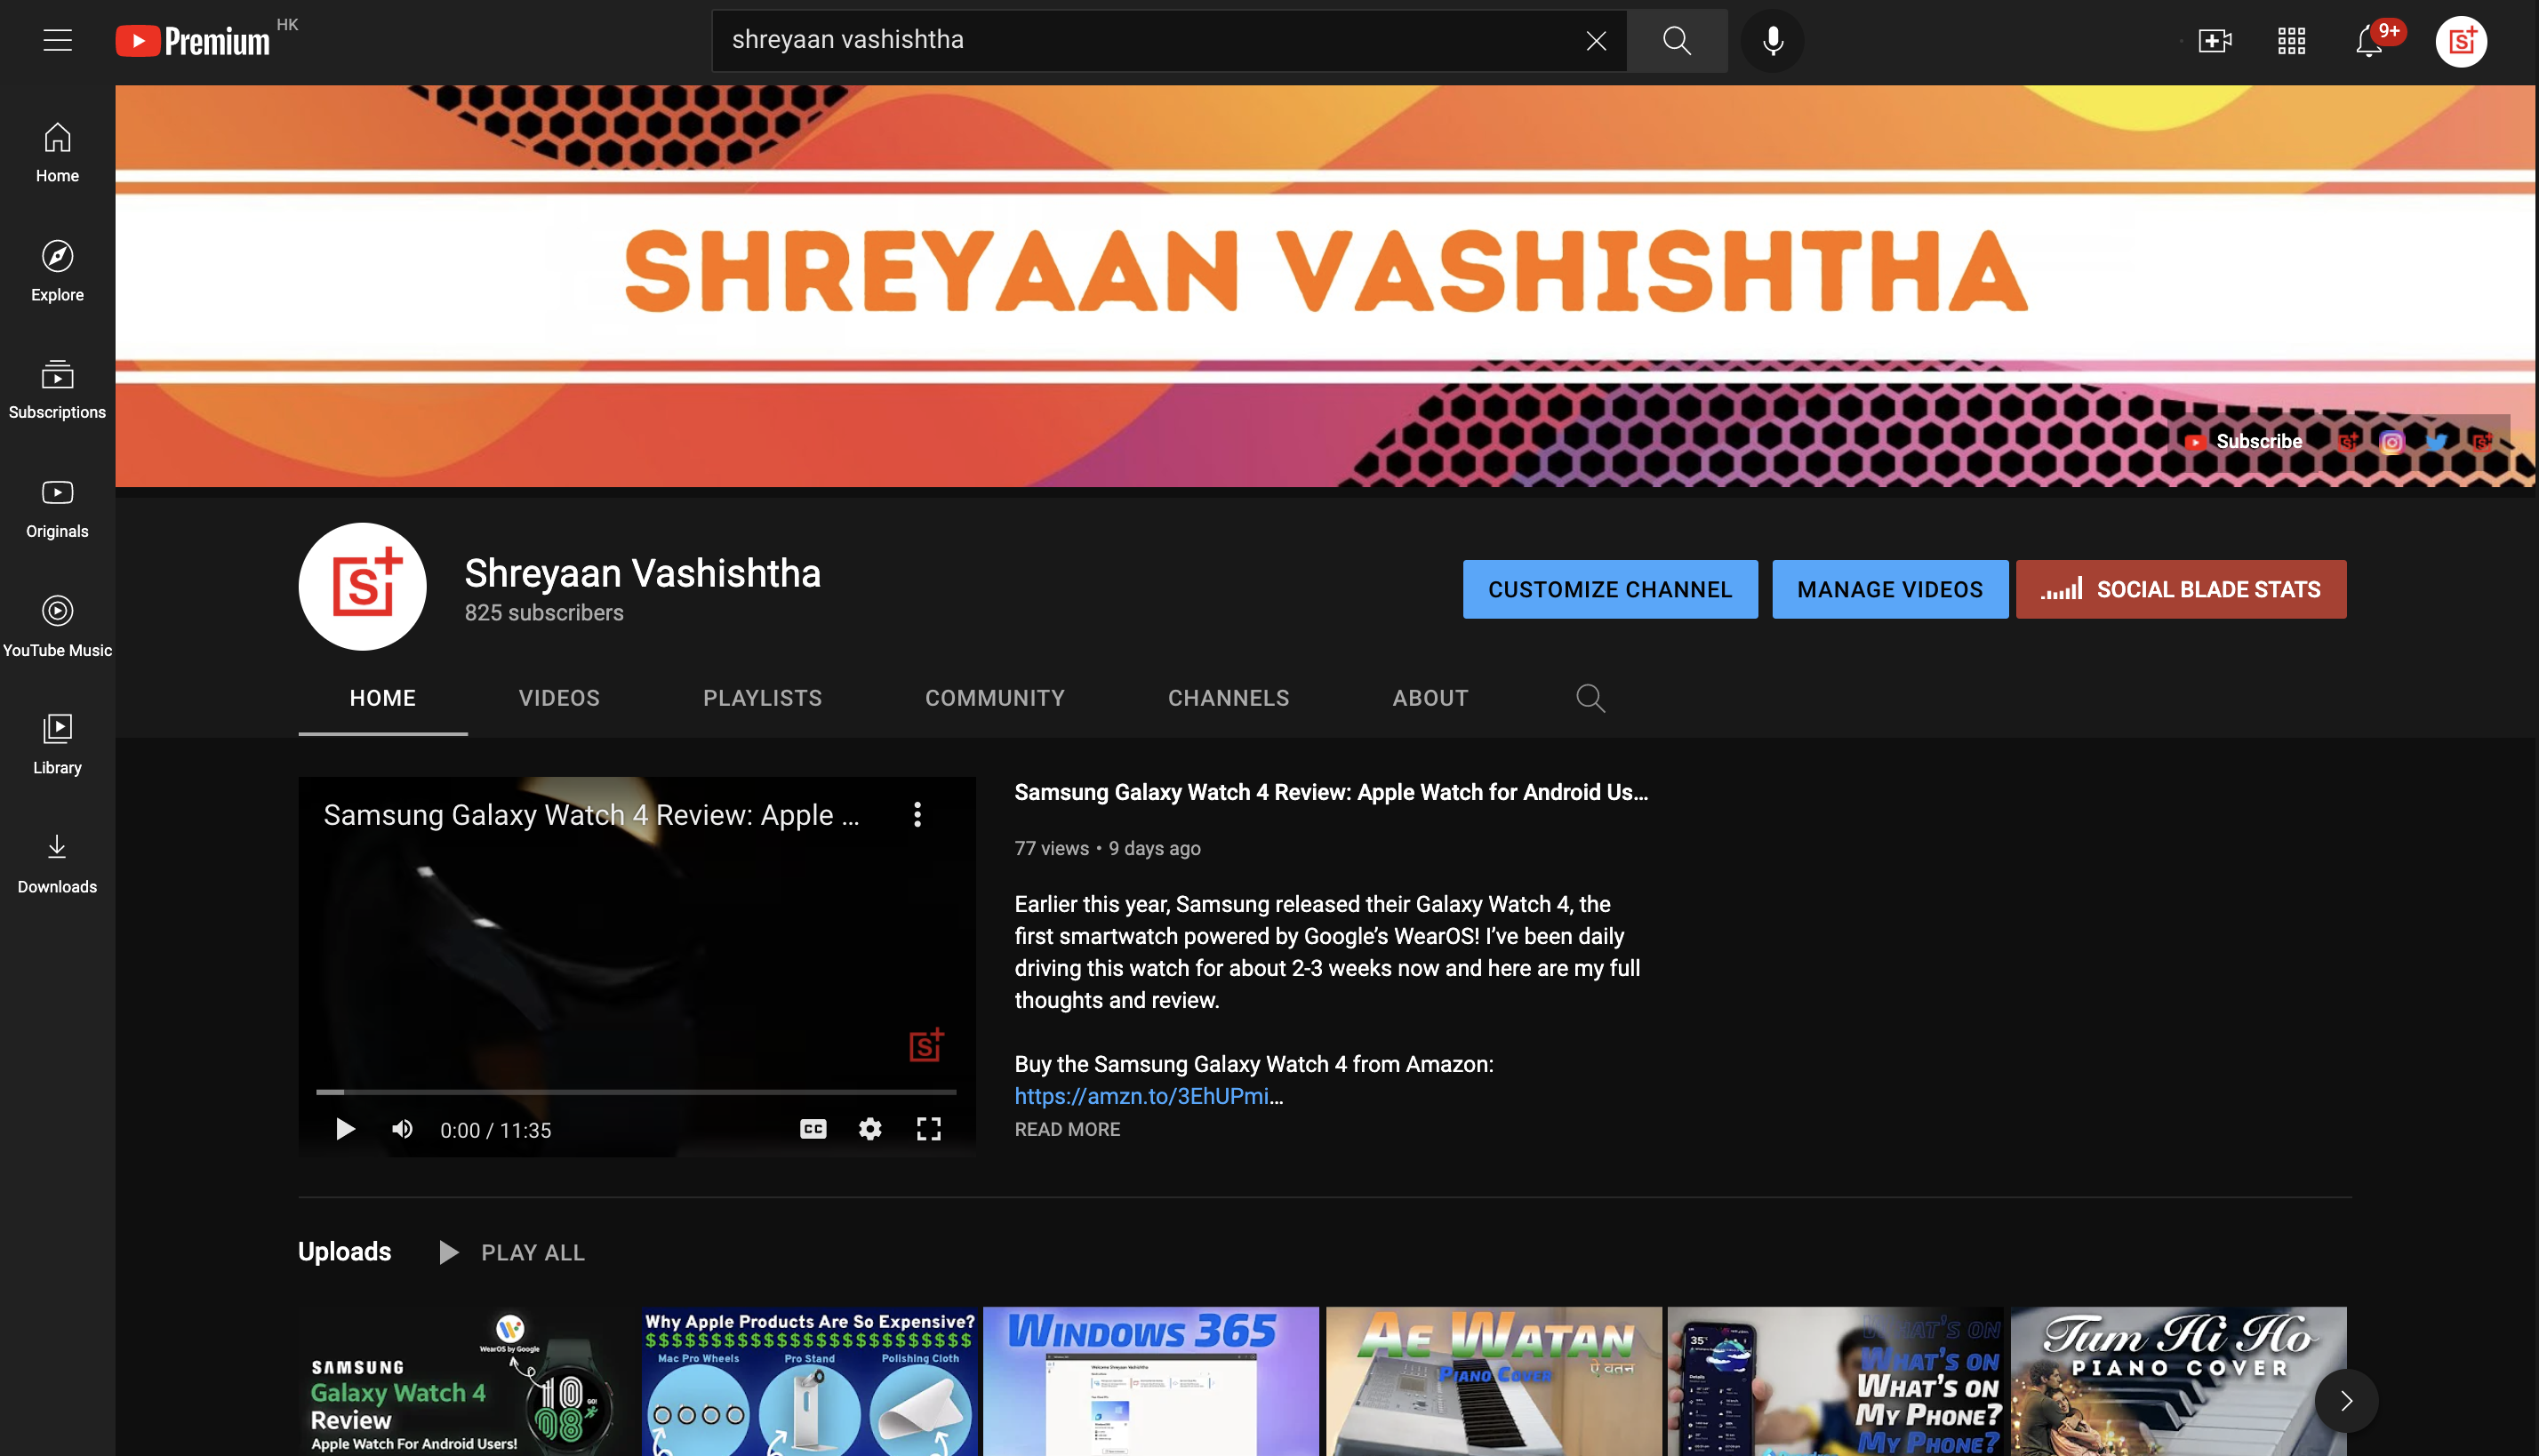 youtube.com/shreyaanvashishtha